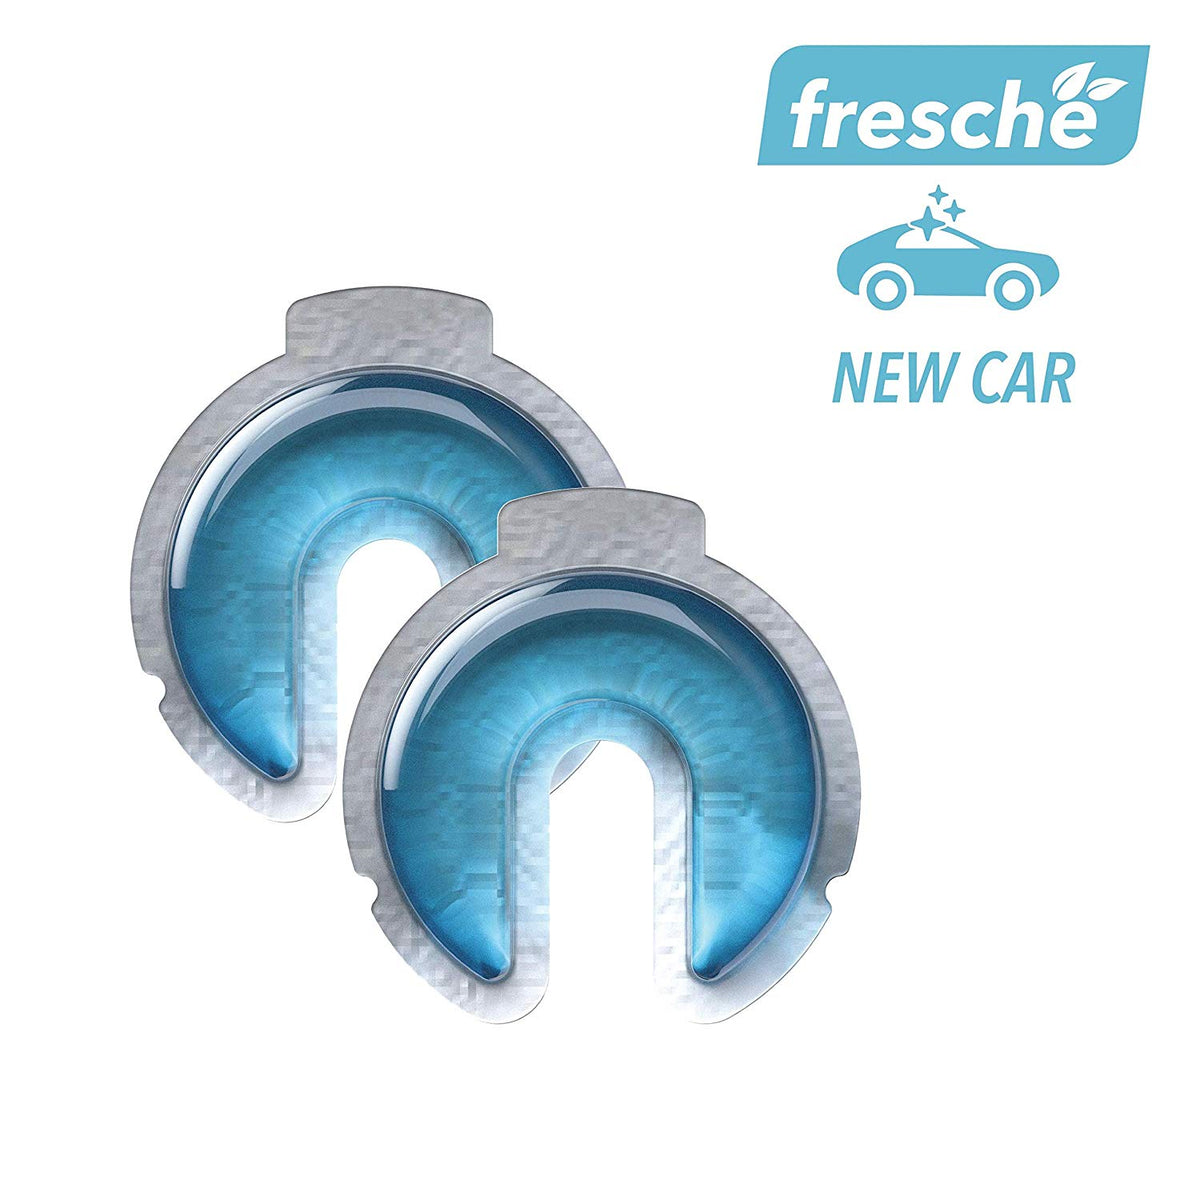 SCOSCHE Air Freshener Refill Cartridges for Fresche Mounts - 2 Packs - New Car